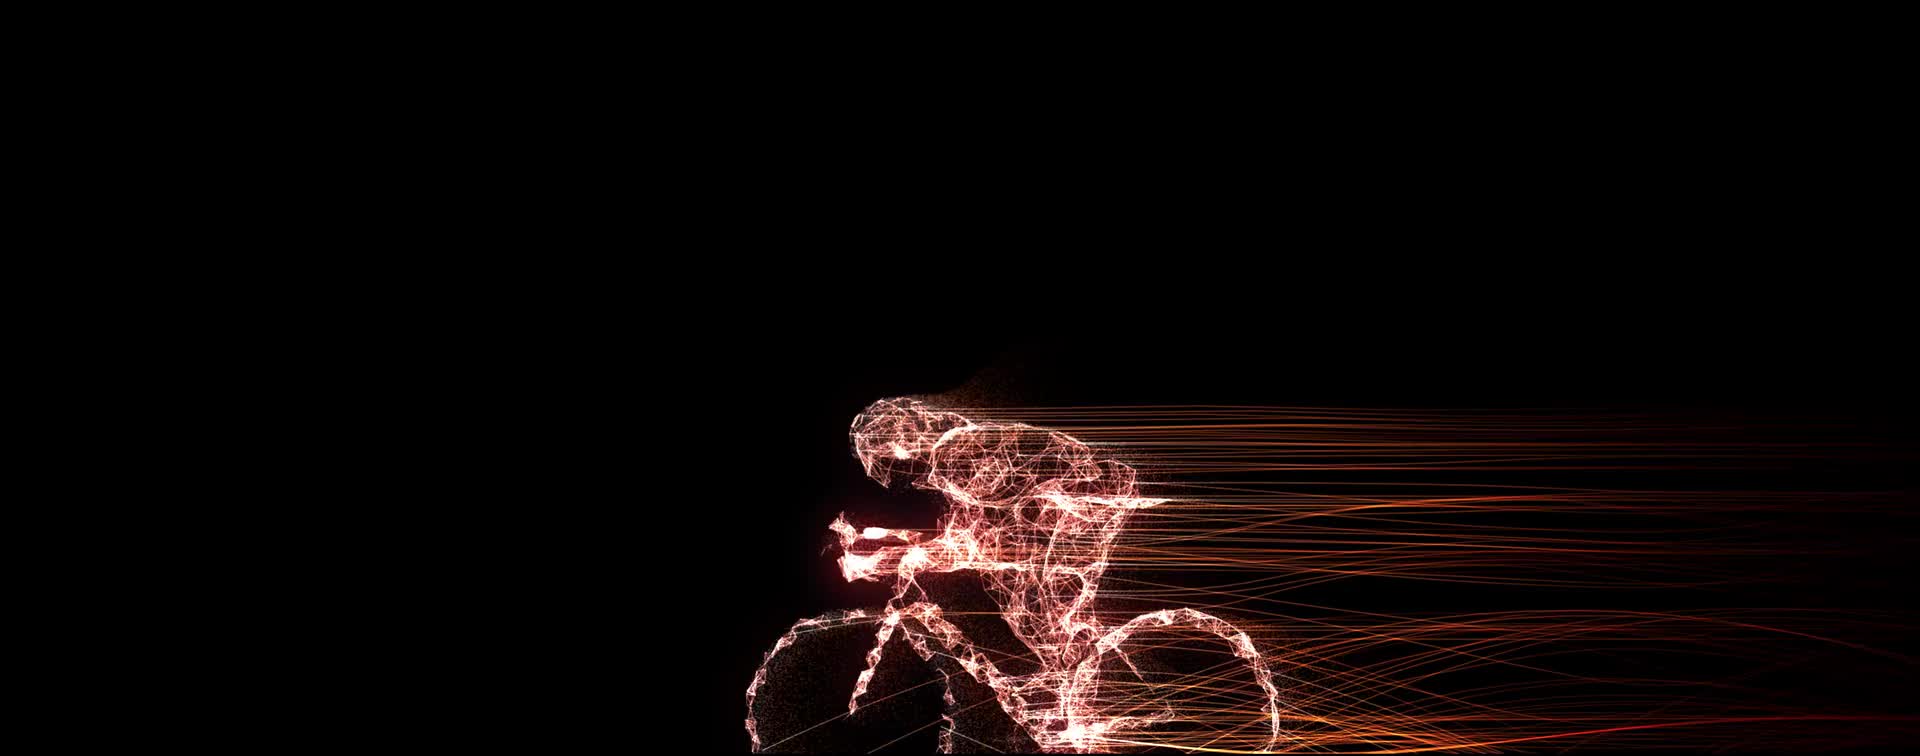 粒子 人体 超能力 骑自行车